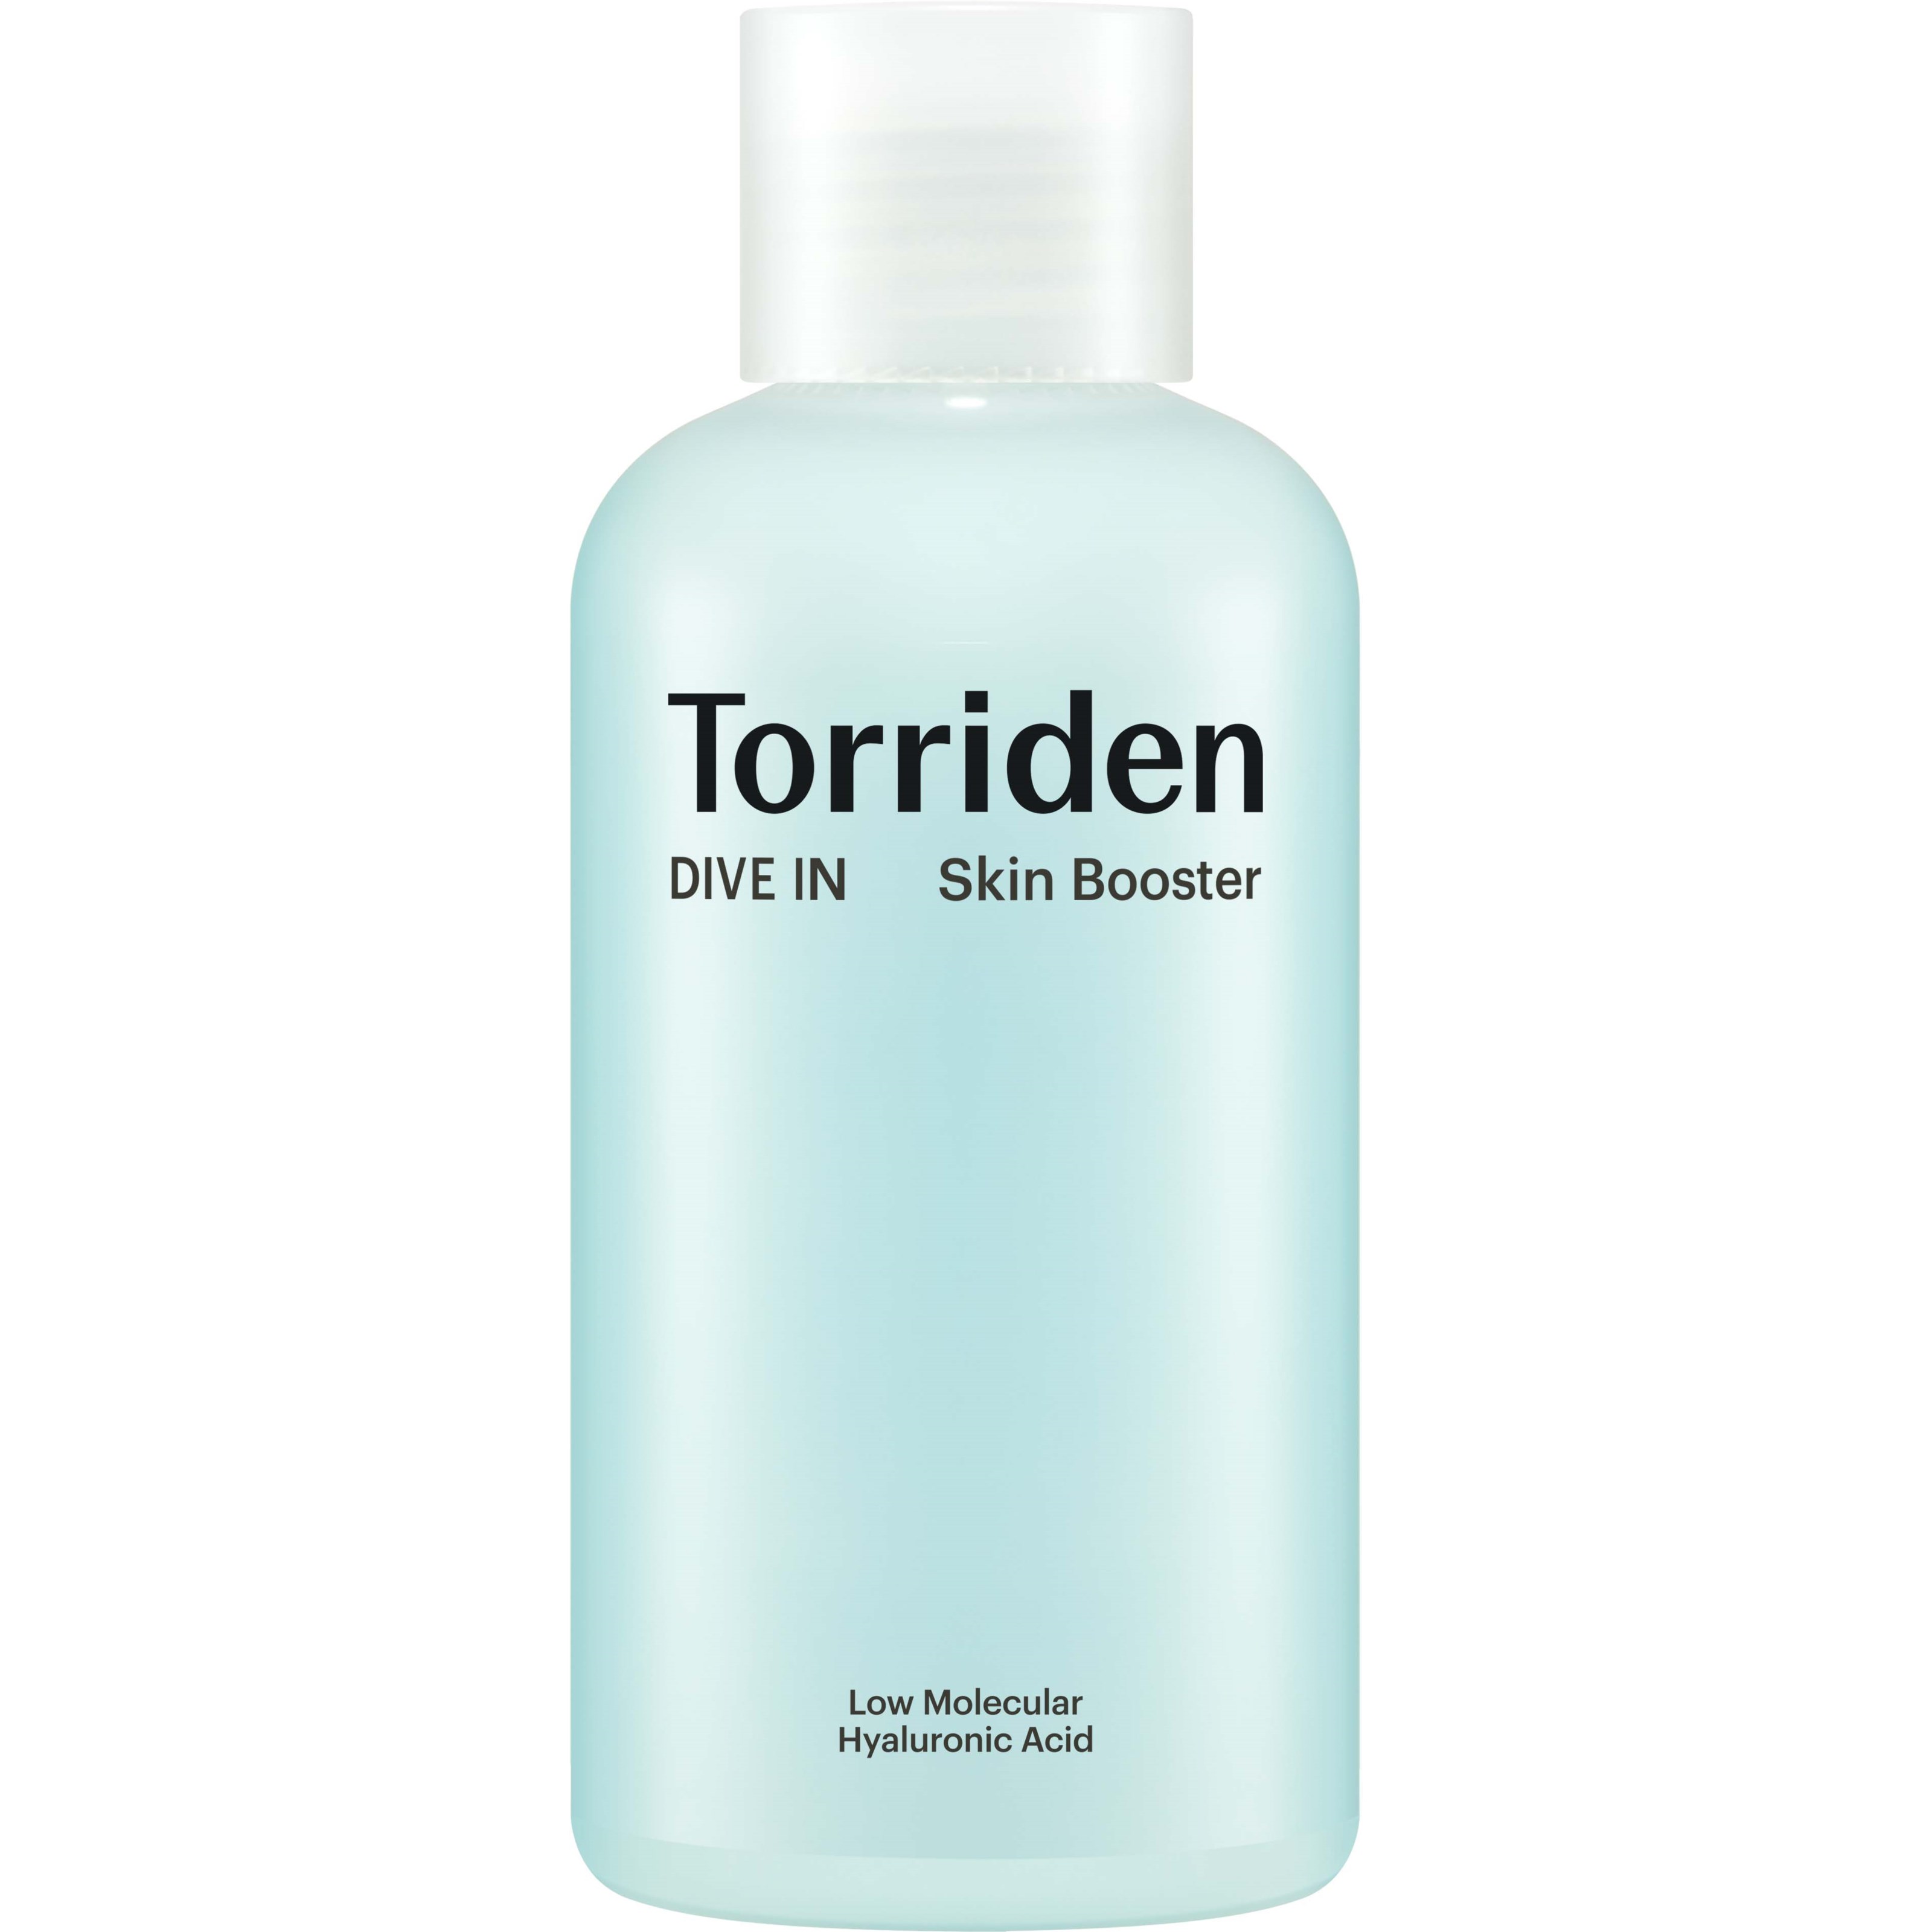 Bilde av Torriden Dive In Low Molecular Hyaluronic Acid Skin Booster 200 Ml